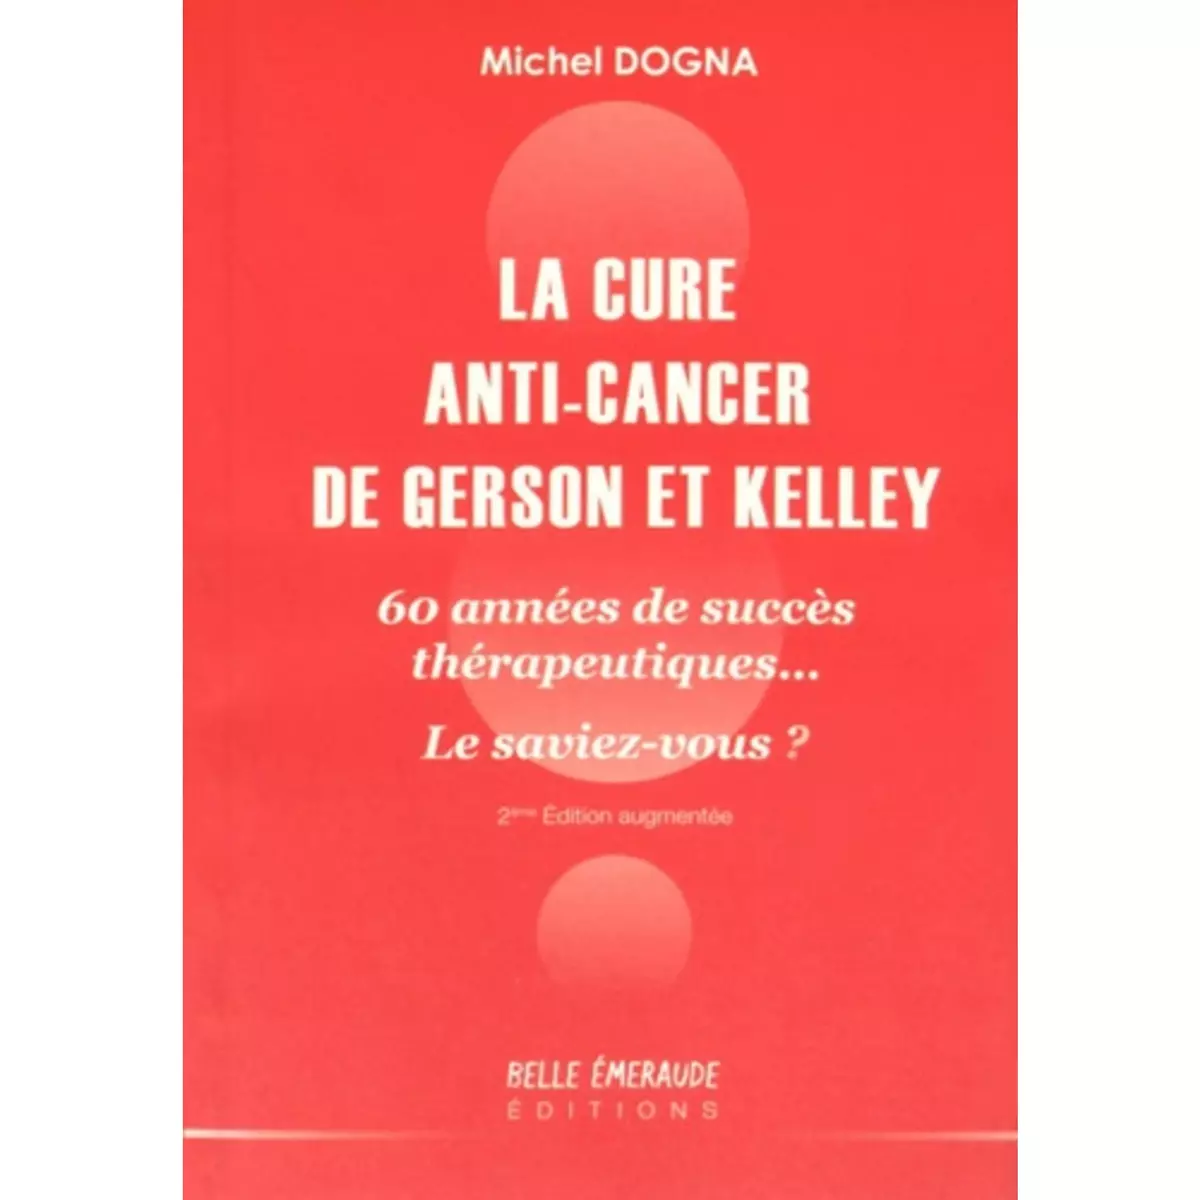  LA CURE ANTI-CANCER DE GERSON ET KELLEY. 60 ANNEES DE SUCCES THERAPEUTIQUES... LE SAVIEZ-VOUS ? 2E EDITION REVUE ET AUGMENTEE, Dogna Michel